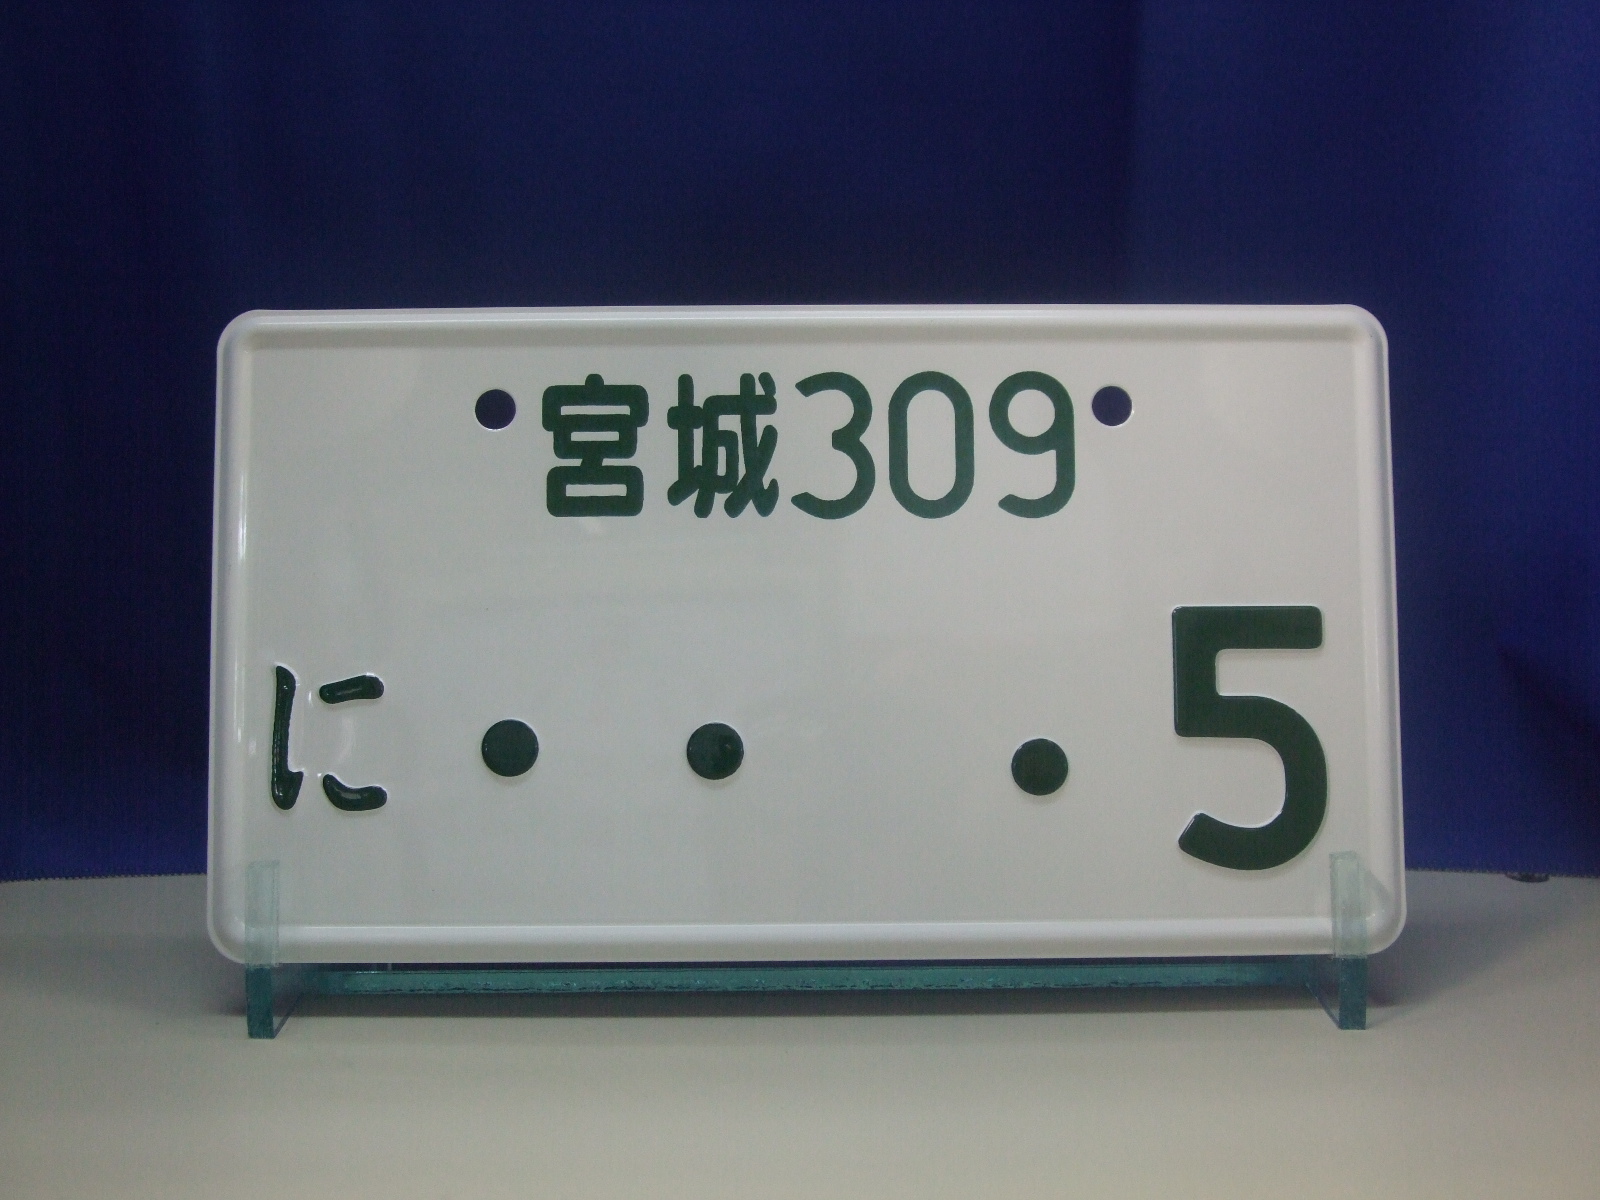 レプリカ記念ナンバープレート 看板 サイン ナンバープレート製作の浜谷金属工業所